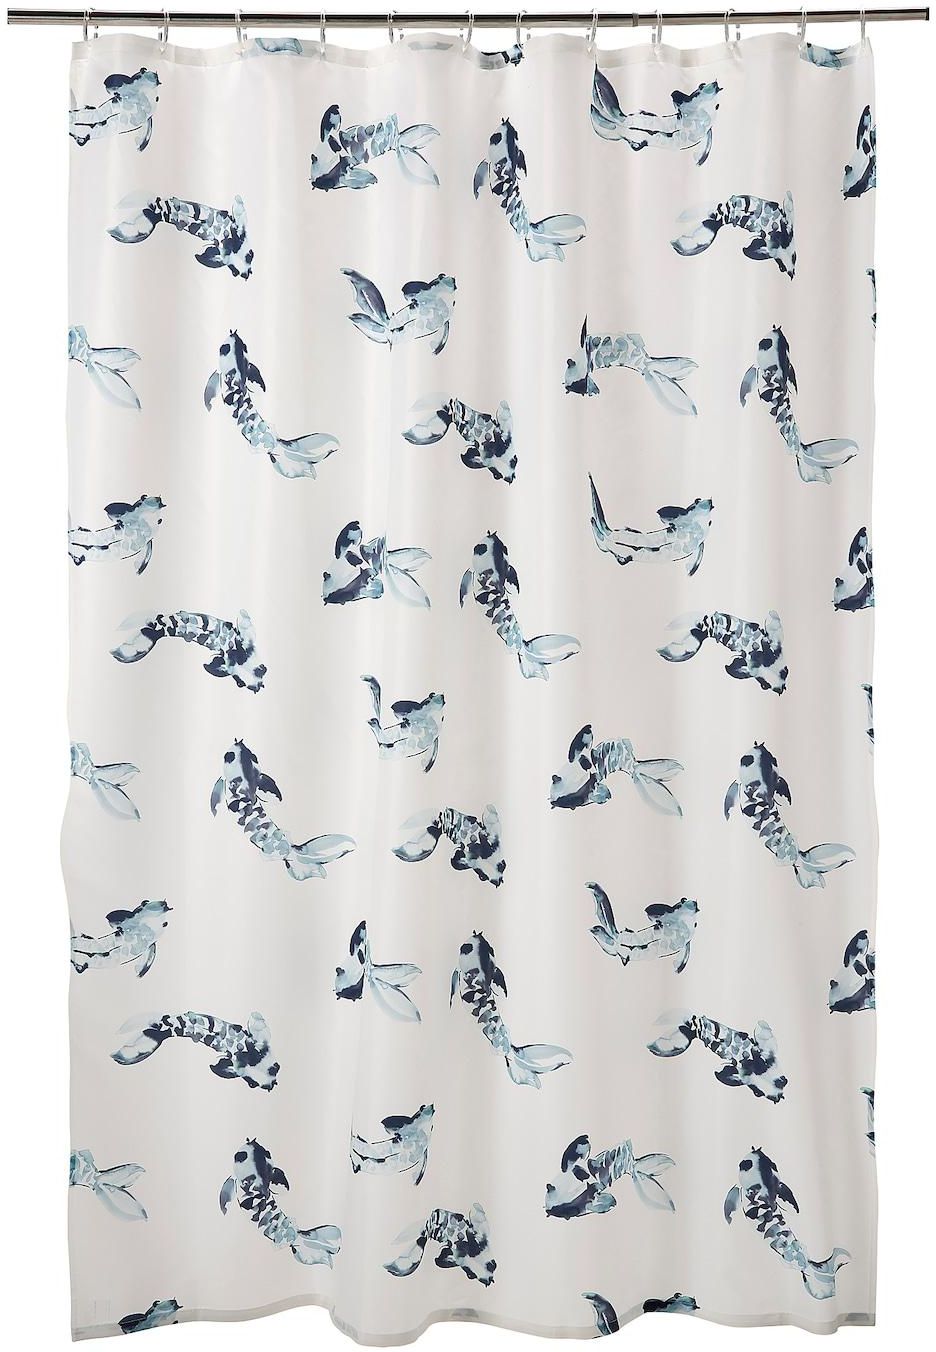 VATTENSJÖN Shower curtain - white blue/fish 180x200 cm